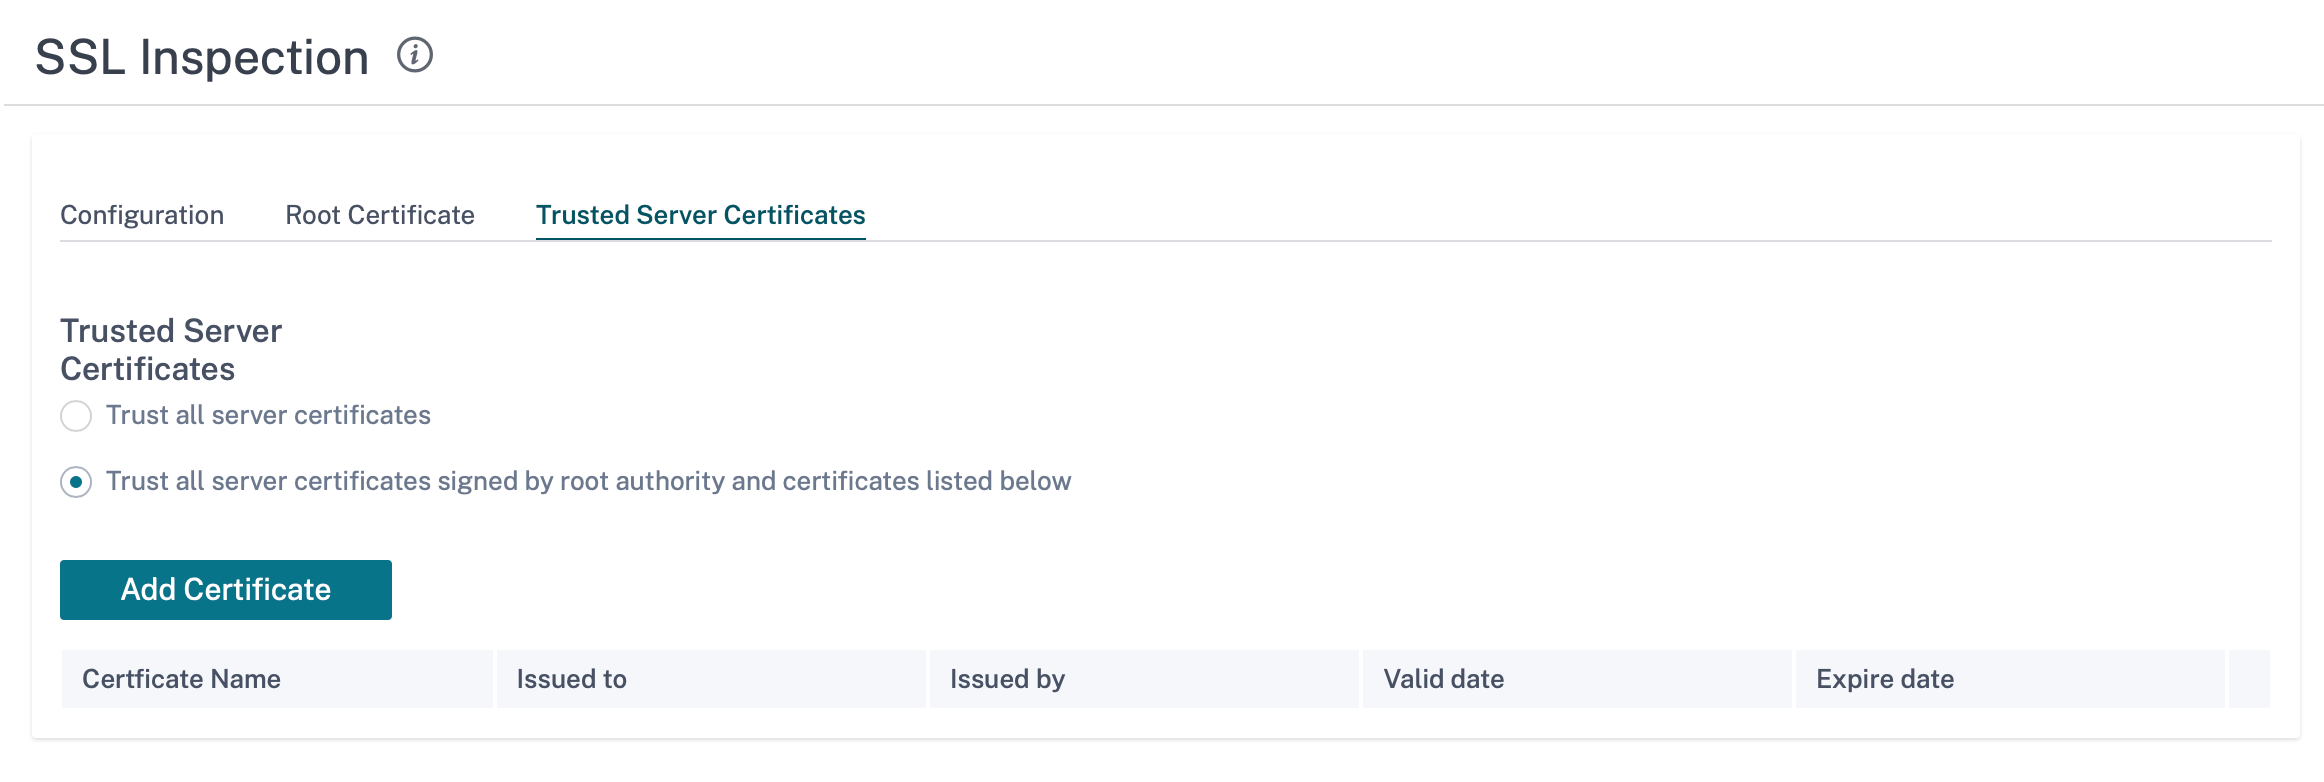 Certificados confiables de inspección SSL